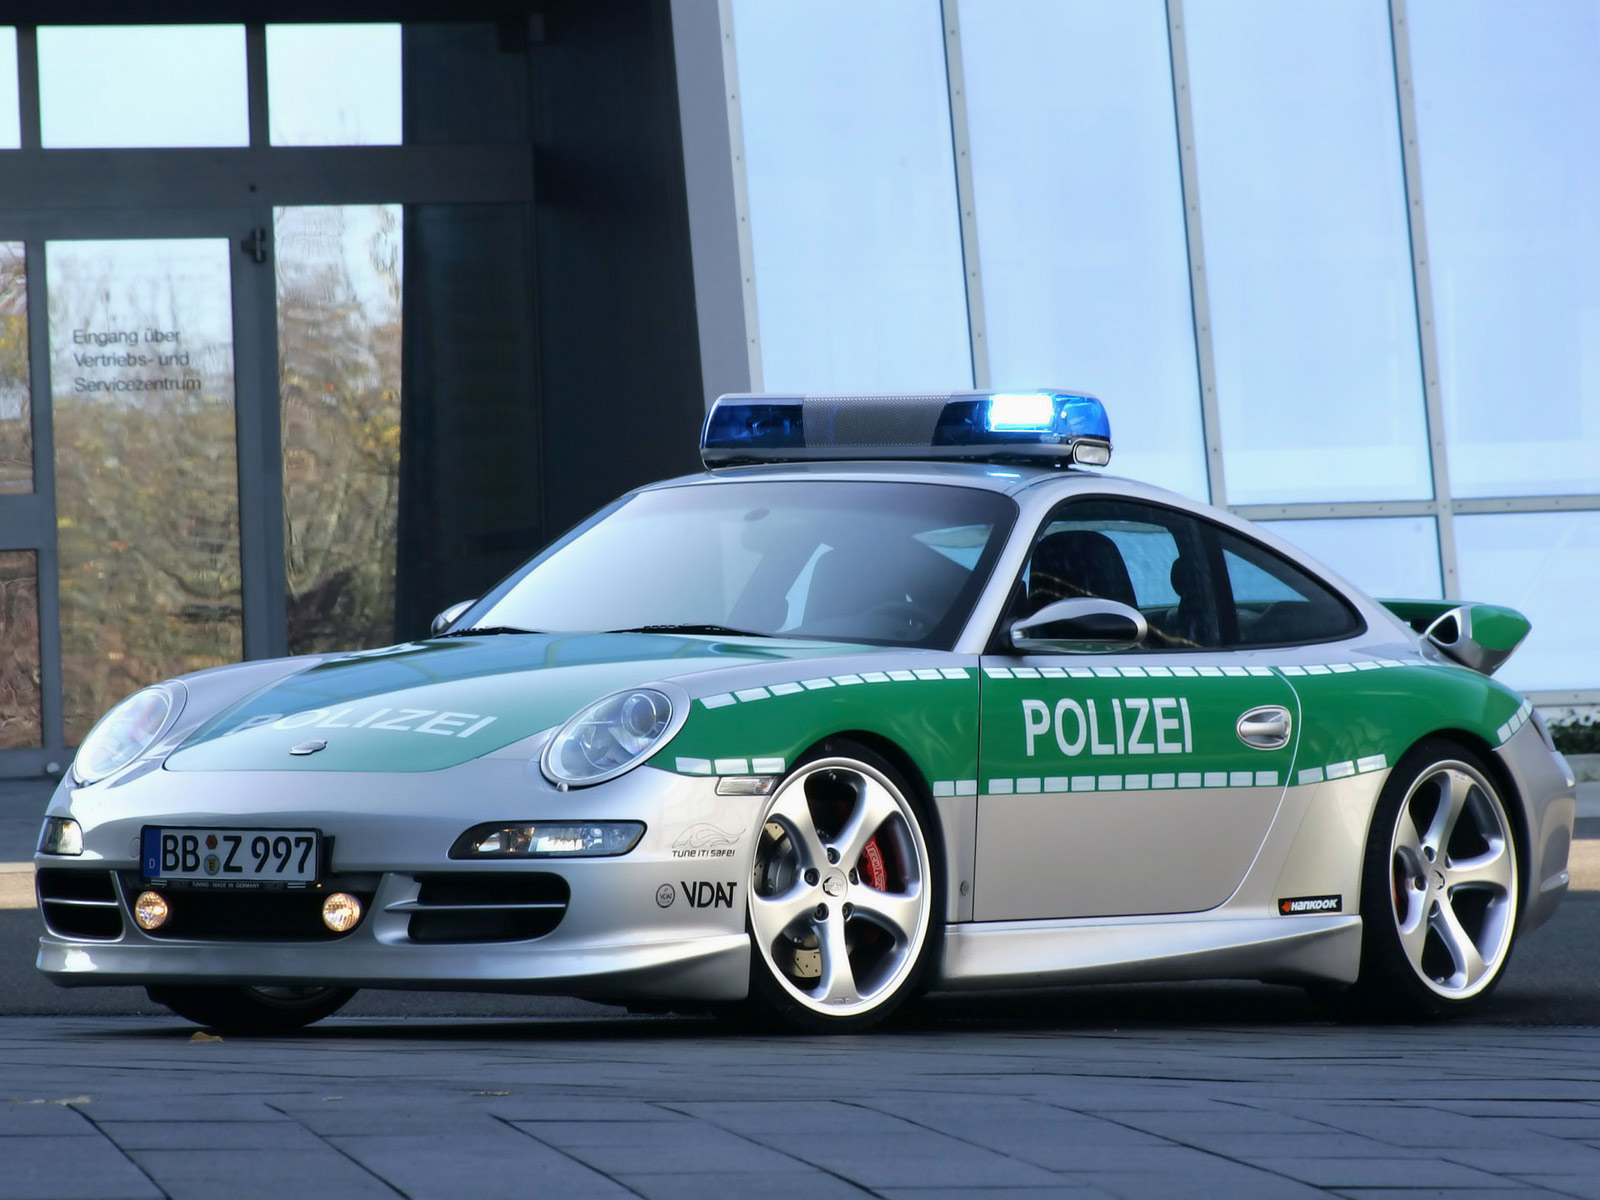 Cool Porsche 911 Police Car